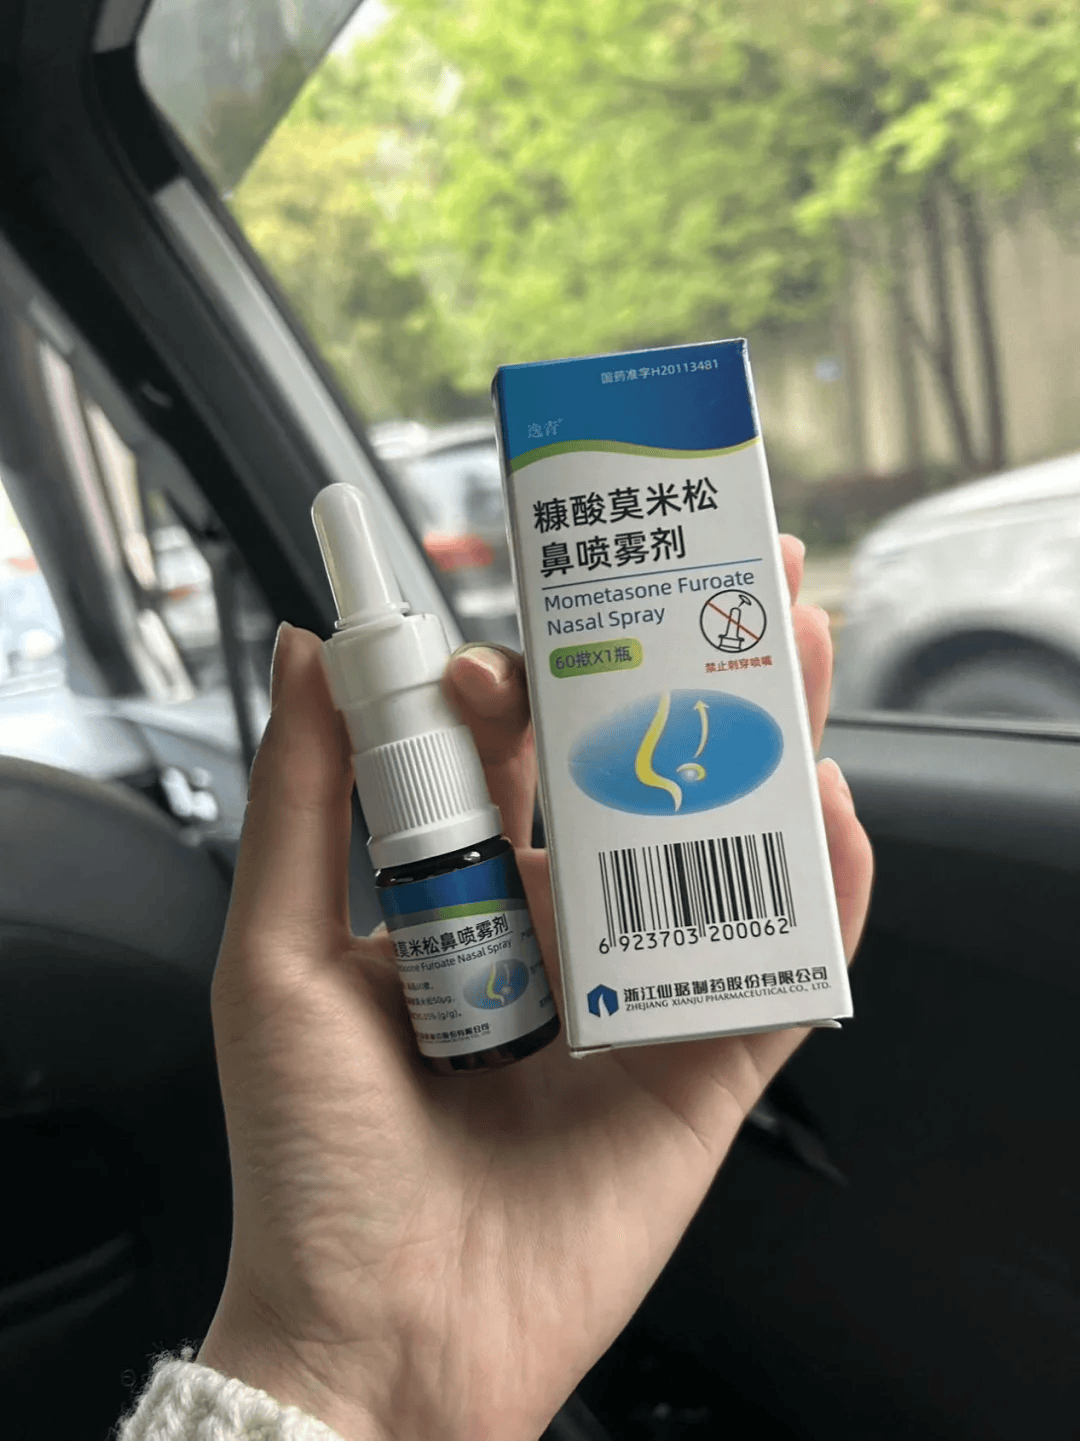 逸青糠酸莫米松鼻喷雾剂:如何缓解鼻炎症状?